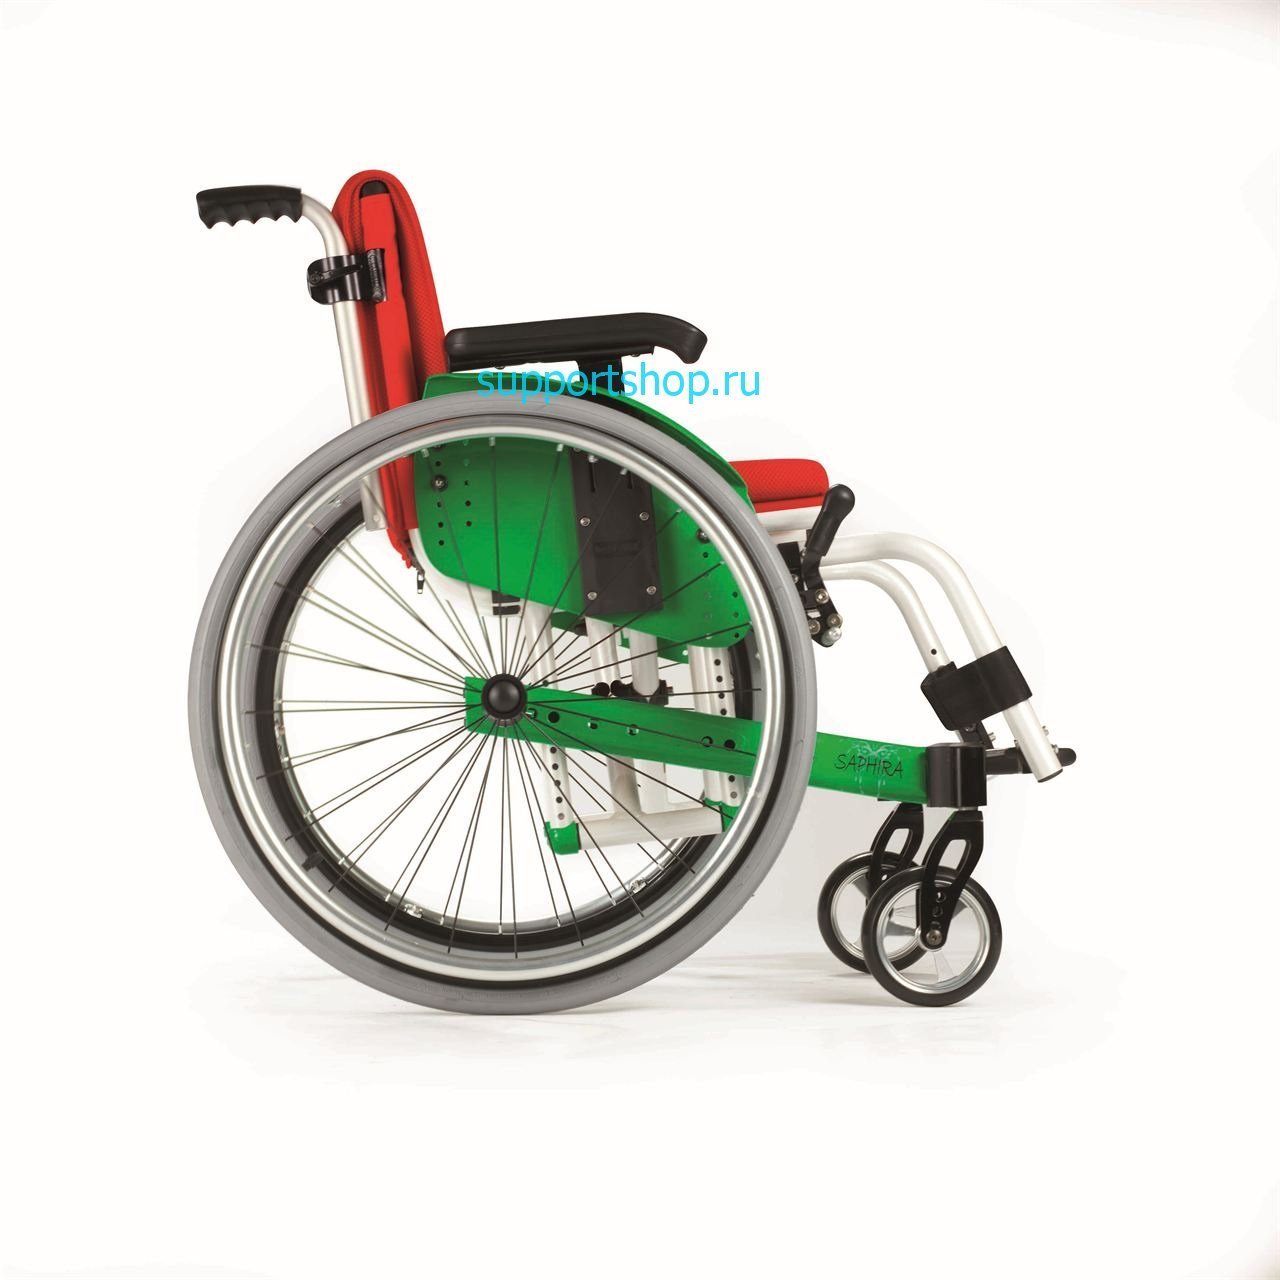 Детская активная инвалидная кресло-коляска SAPHIRA (LY-170)